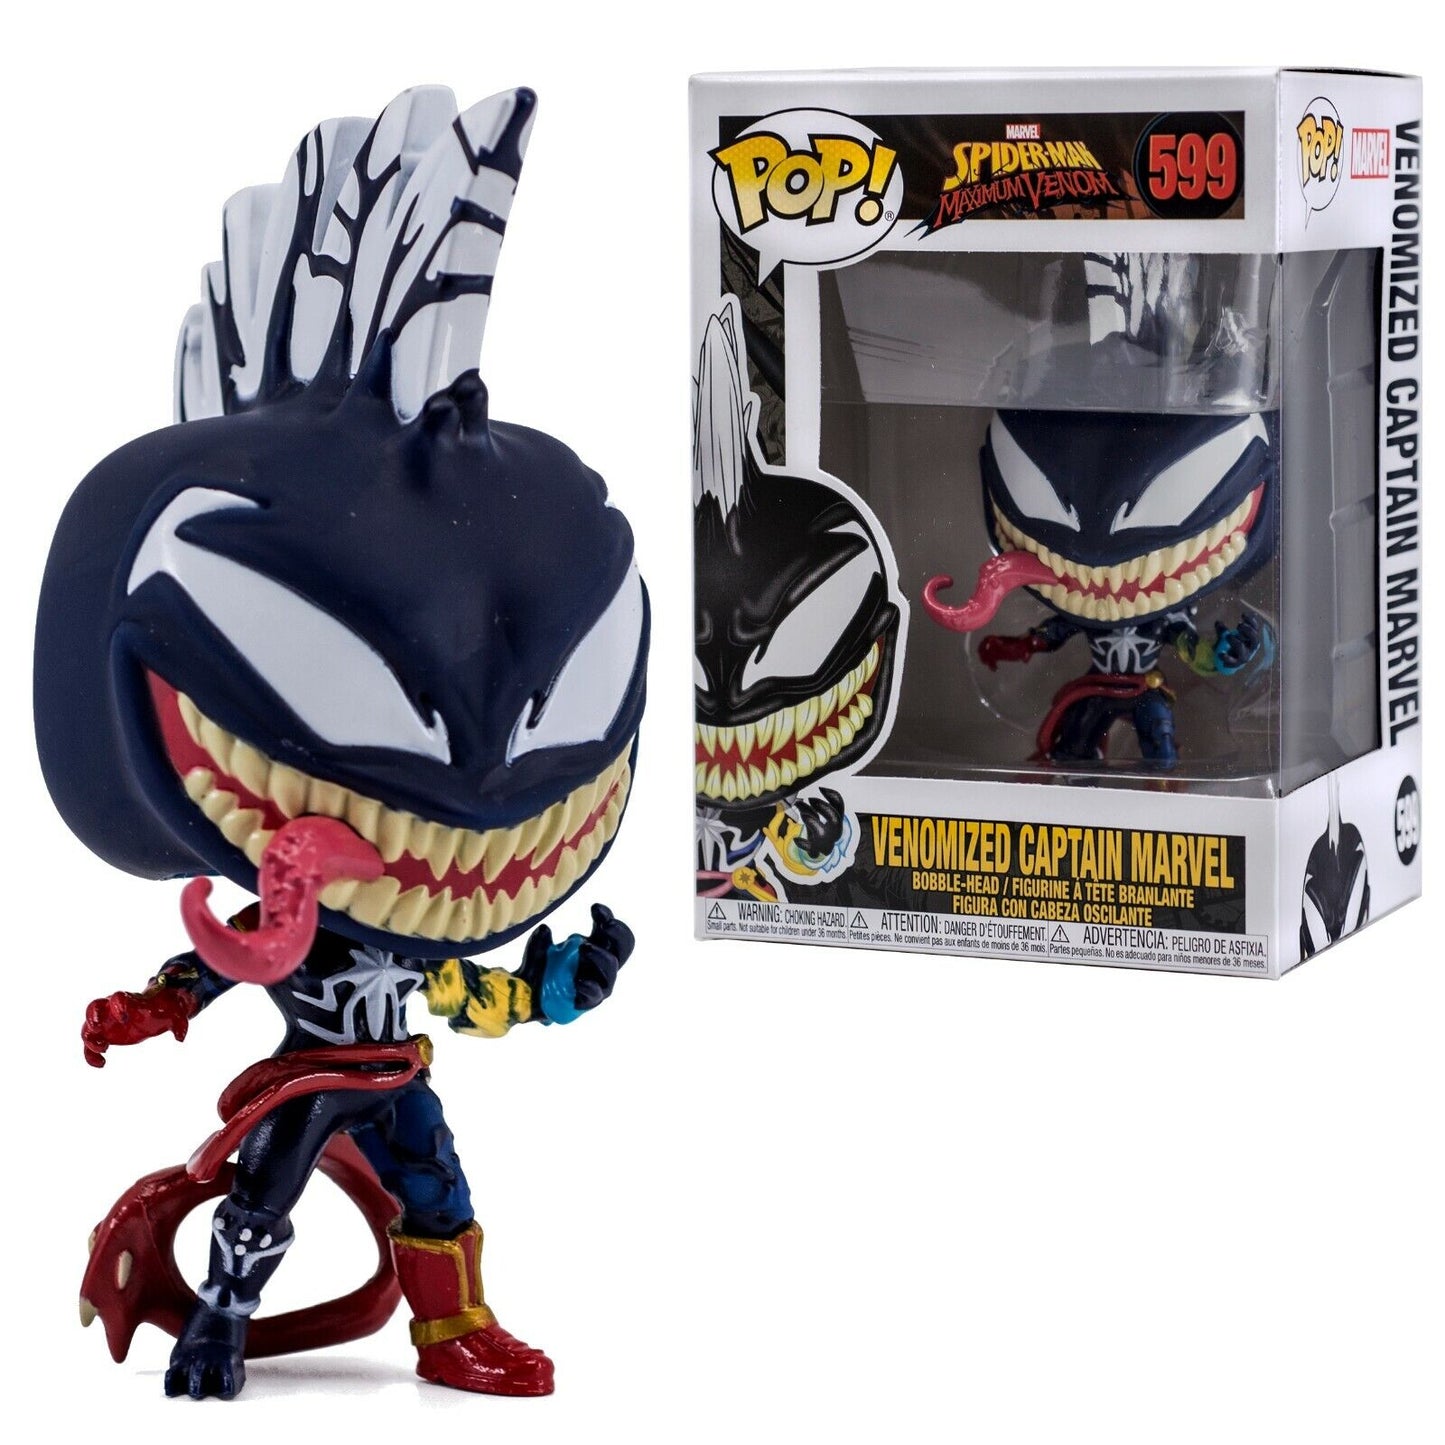 Funko Pop! - Spider-man Maximum Venom - Venomized Captain Marvel - 599